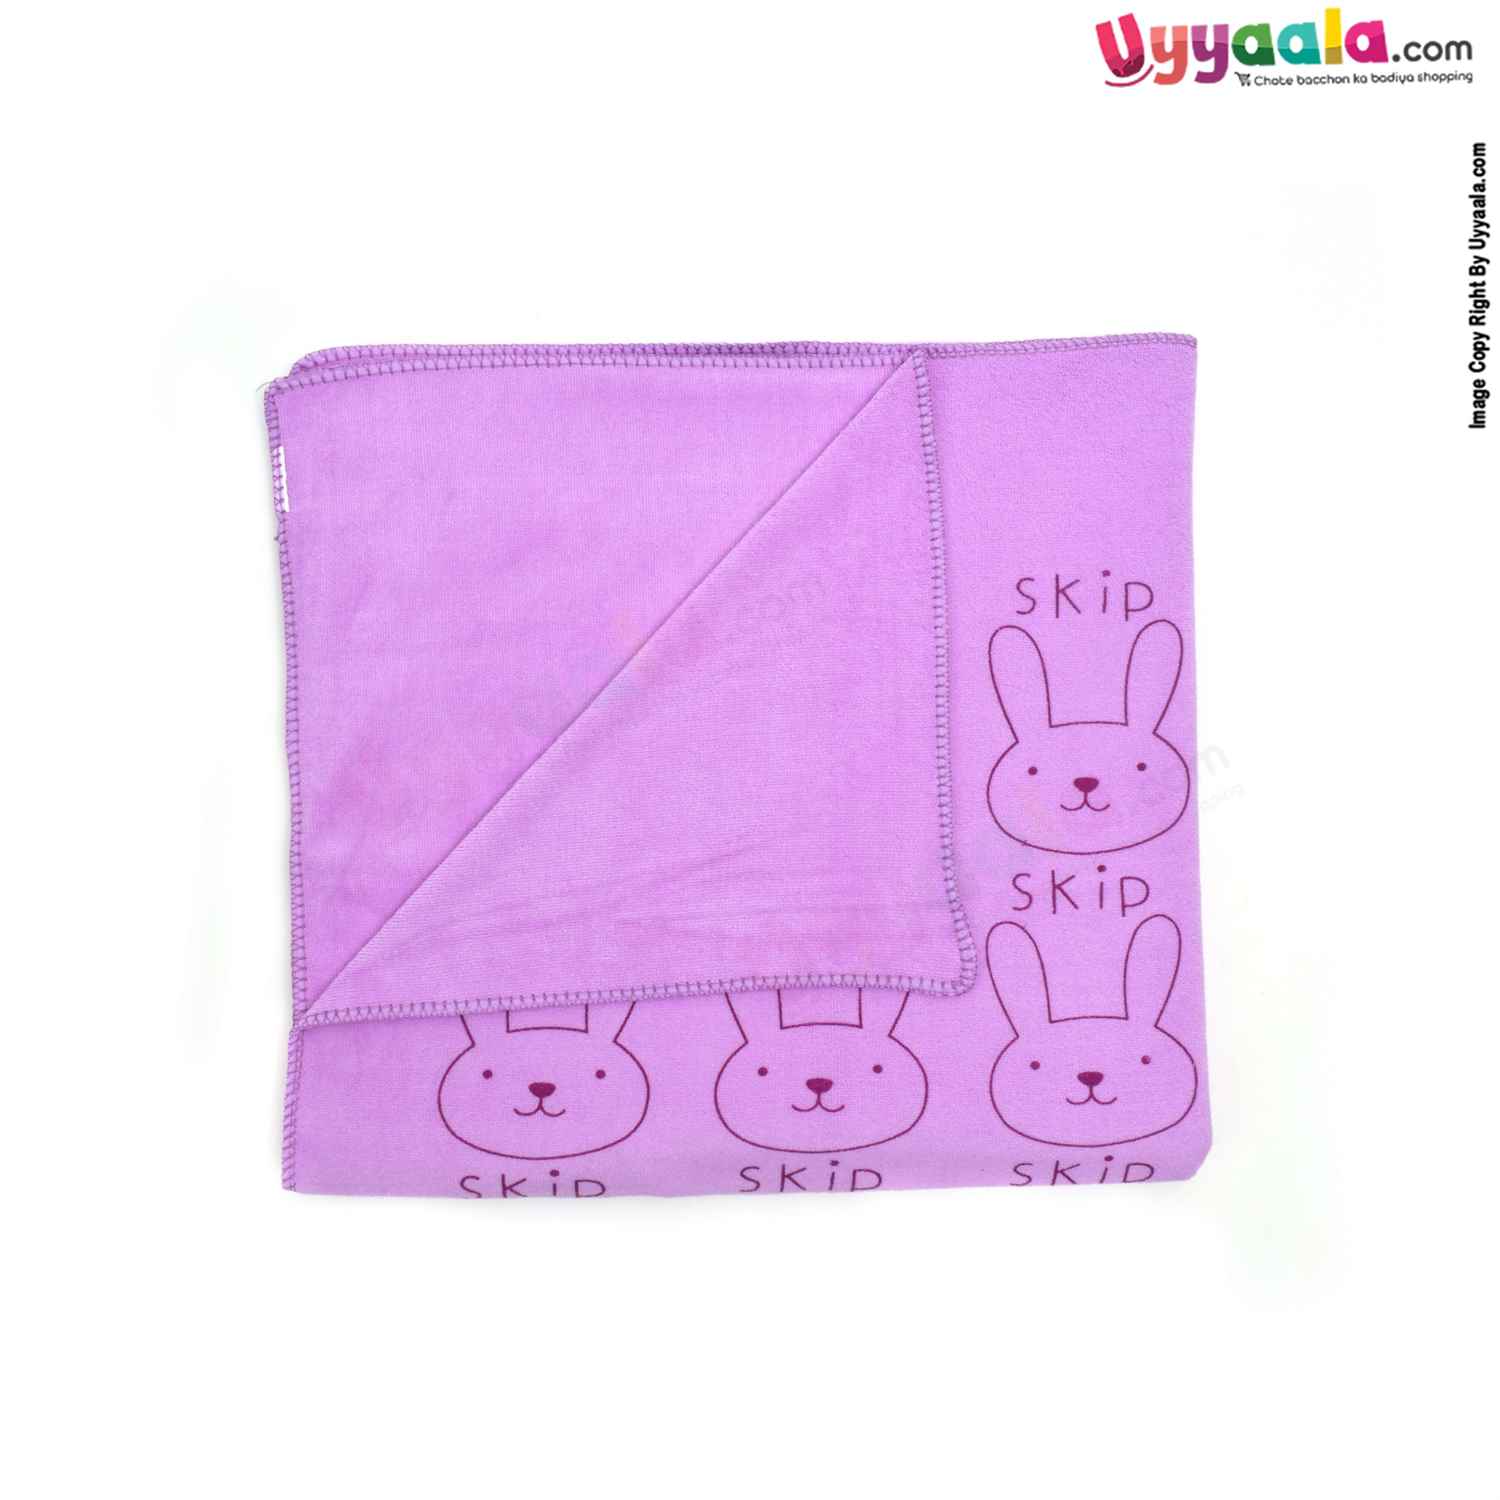 Soft Terry Bath Towel Premium with Rabbit Print for Babies 0-36m Age, Size (143*75cm)- Purple